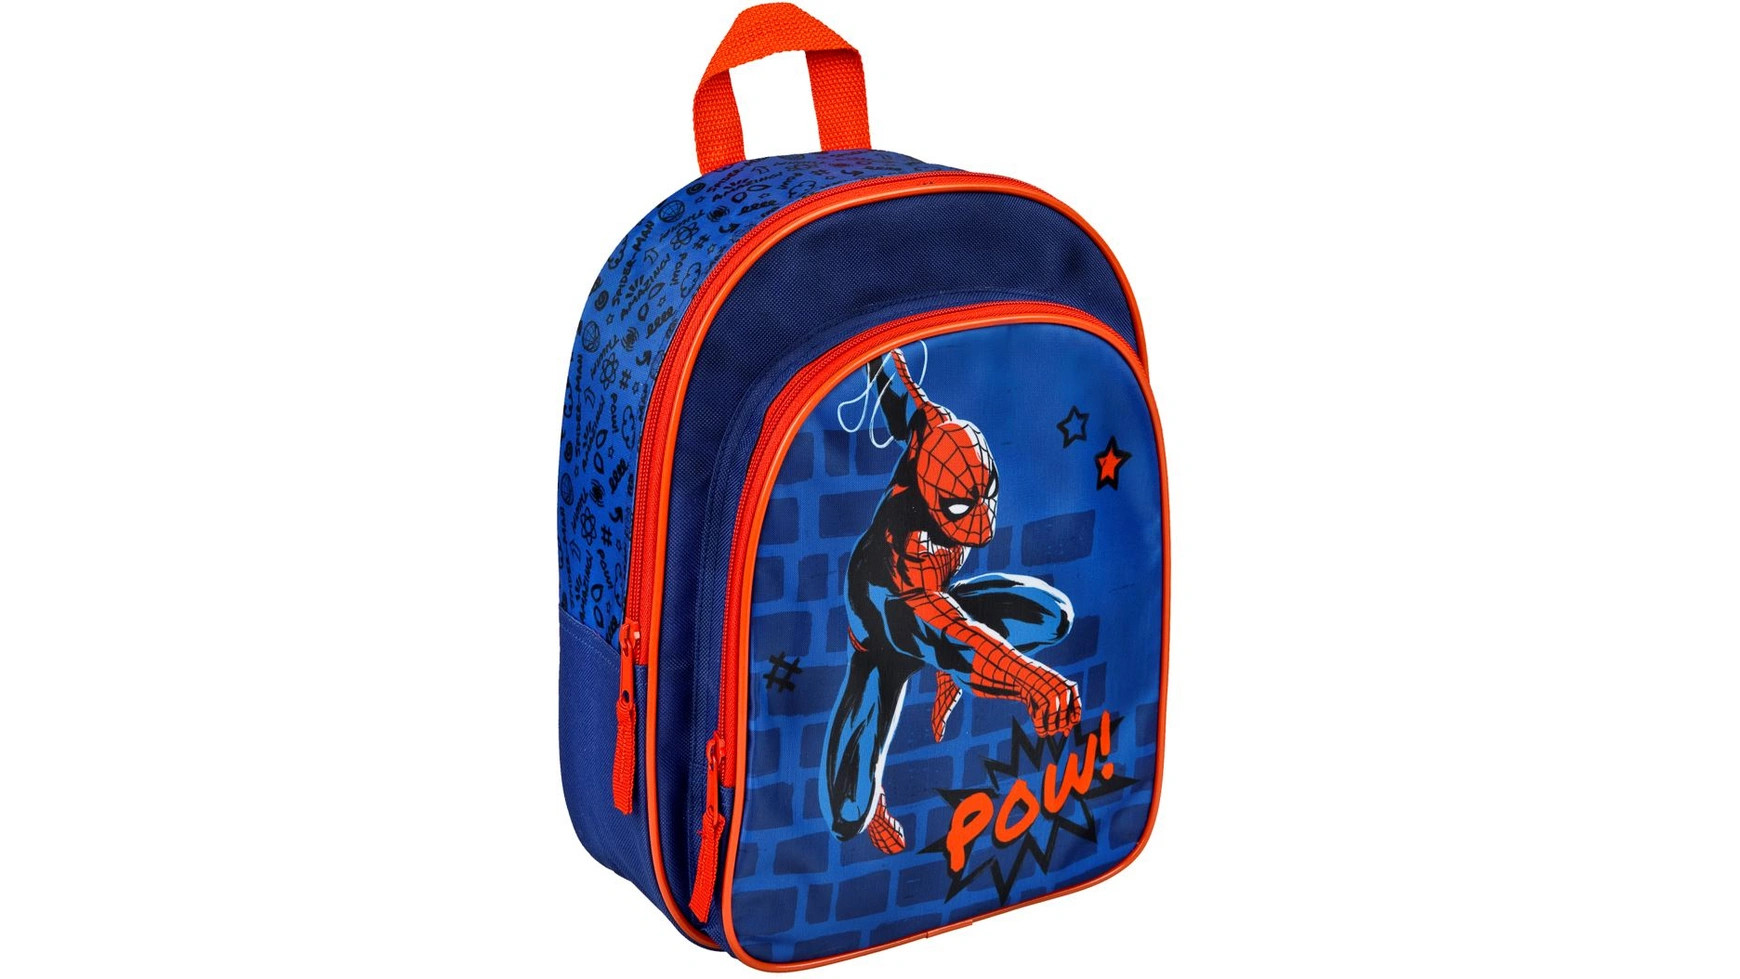 Undercover Рюкзак Marvel Spider-Man с передним карманом рюкзак с карманом spider man человек паук